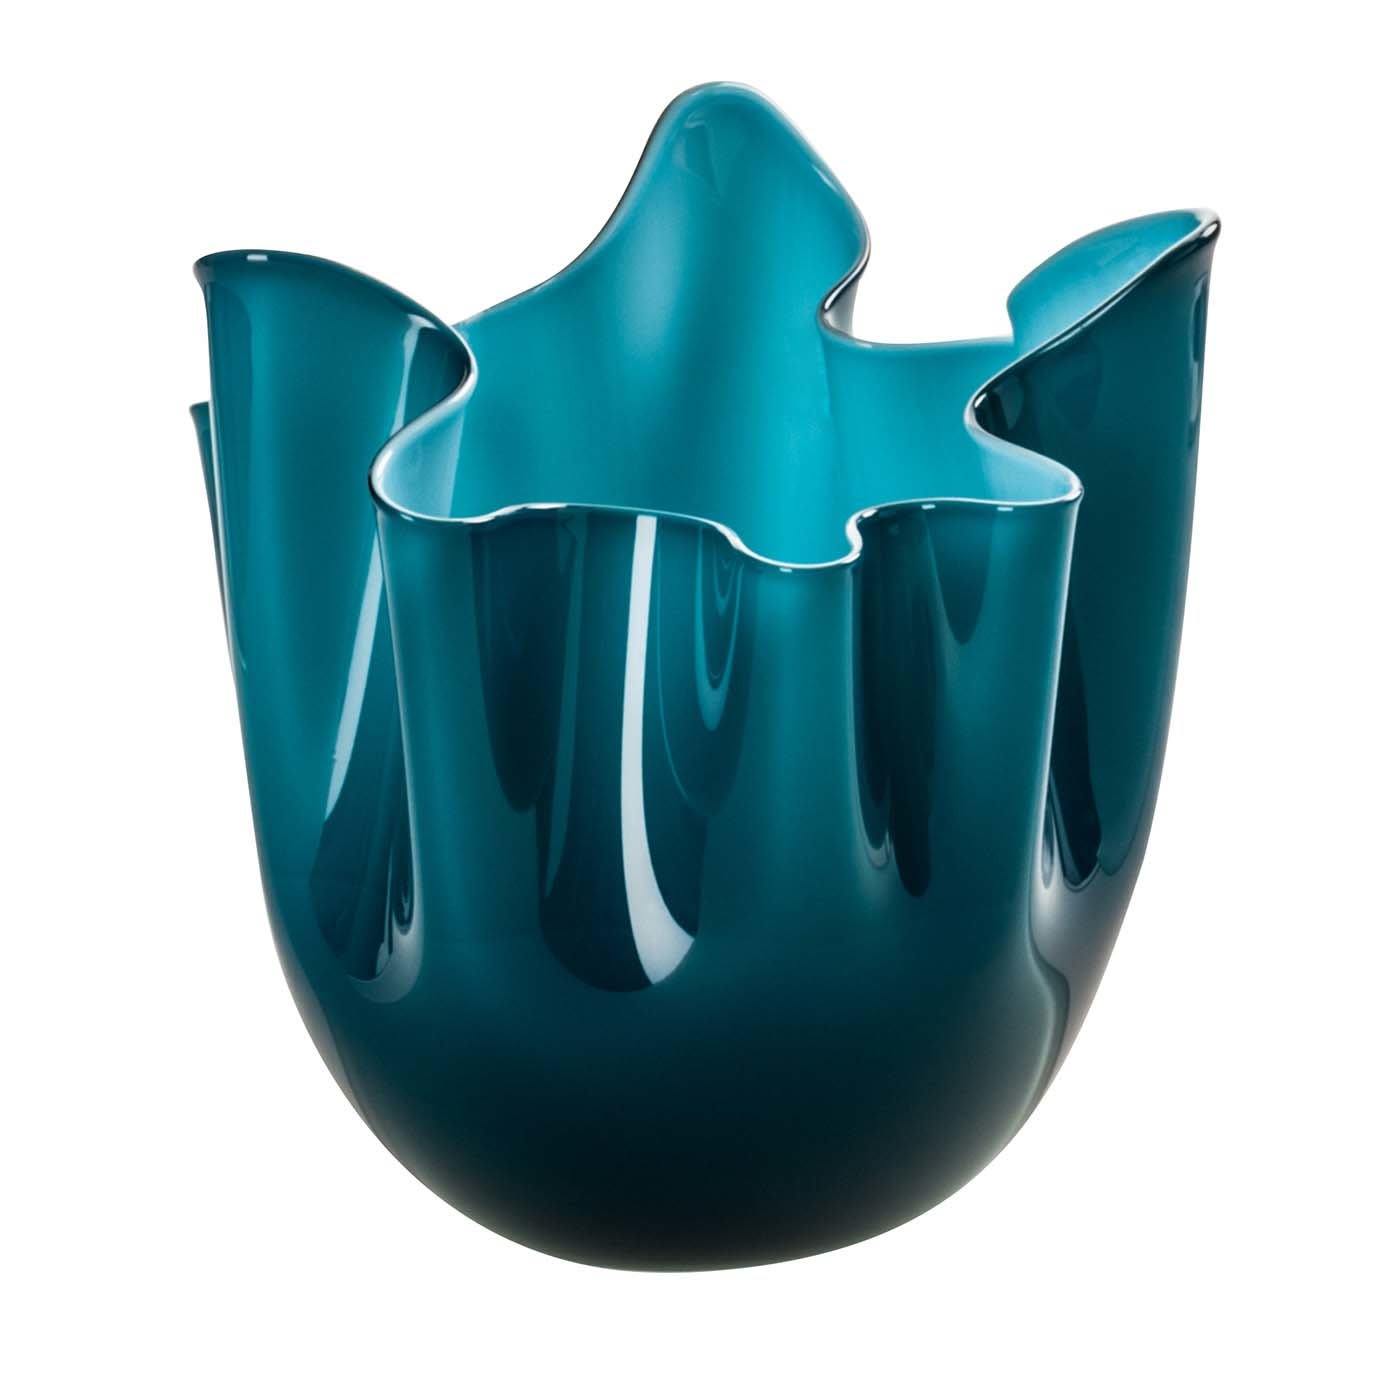 Fazzoletti Opaline Small Blue Vase by Fulvio Bianconi and Paolo Venini - Venini